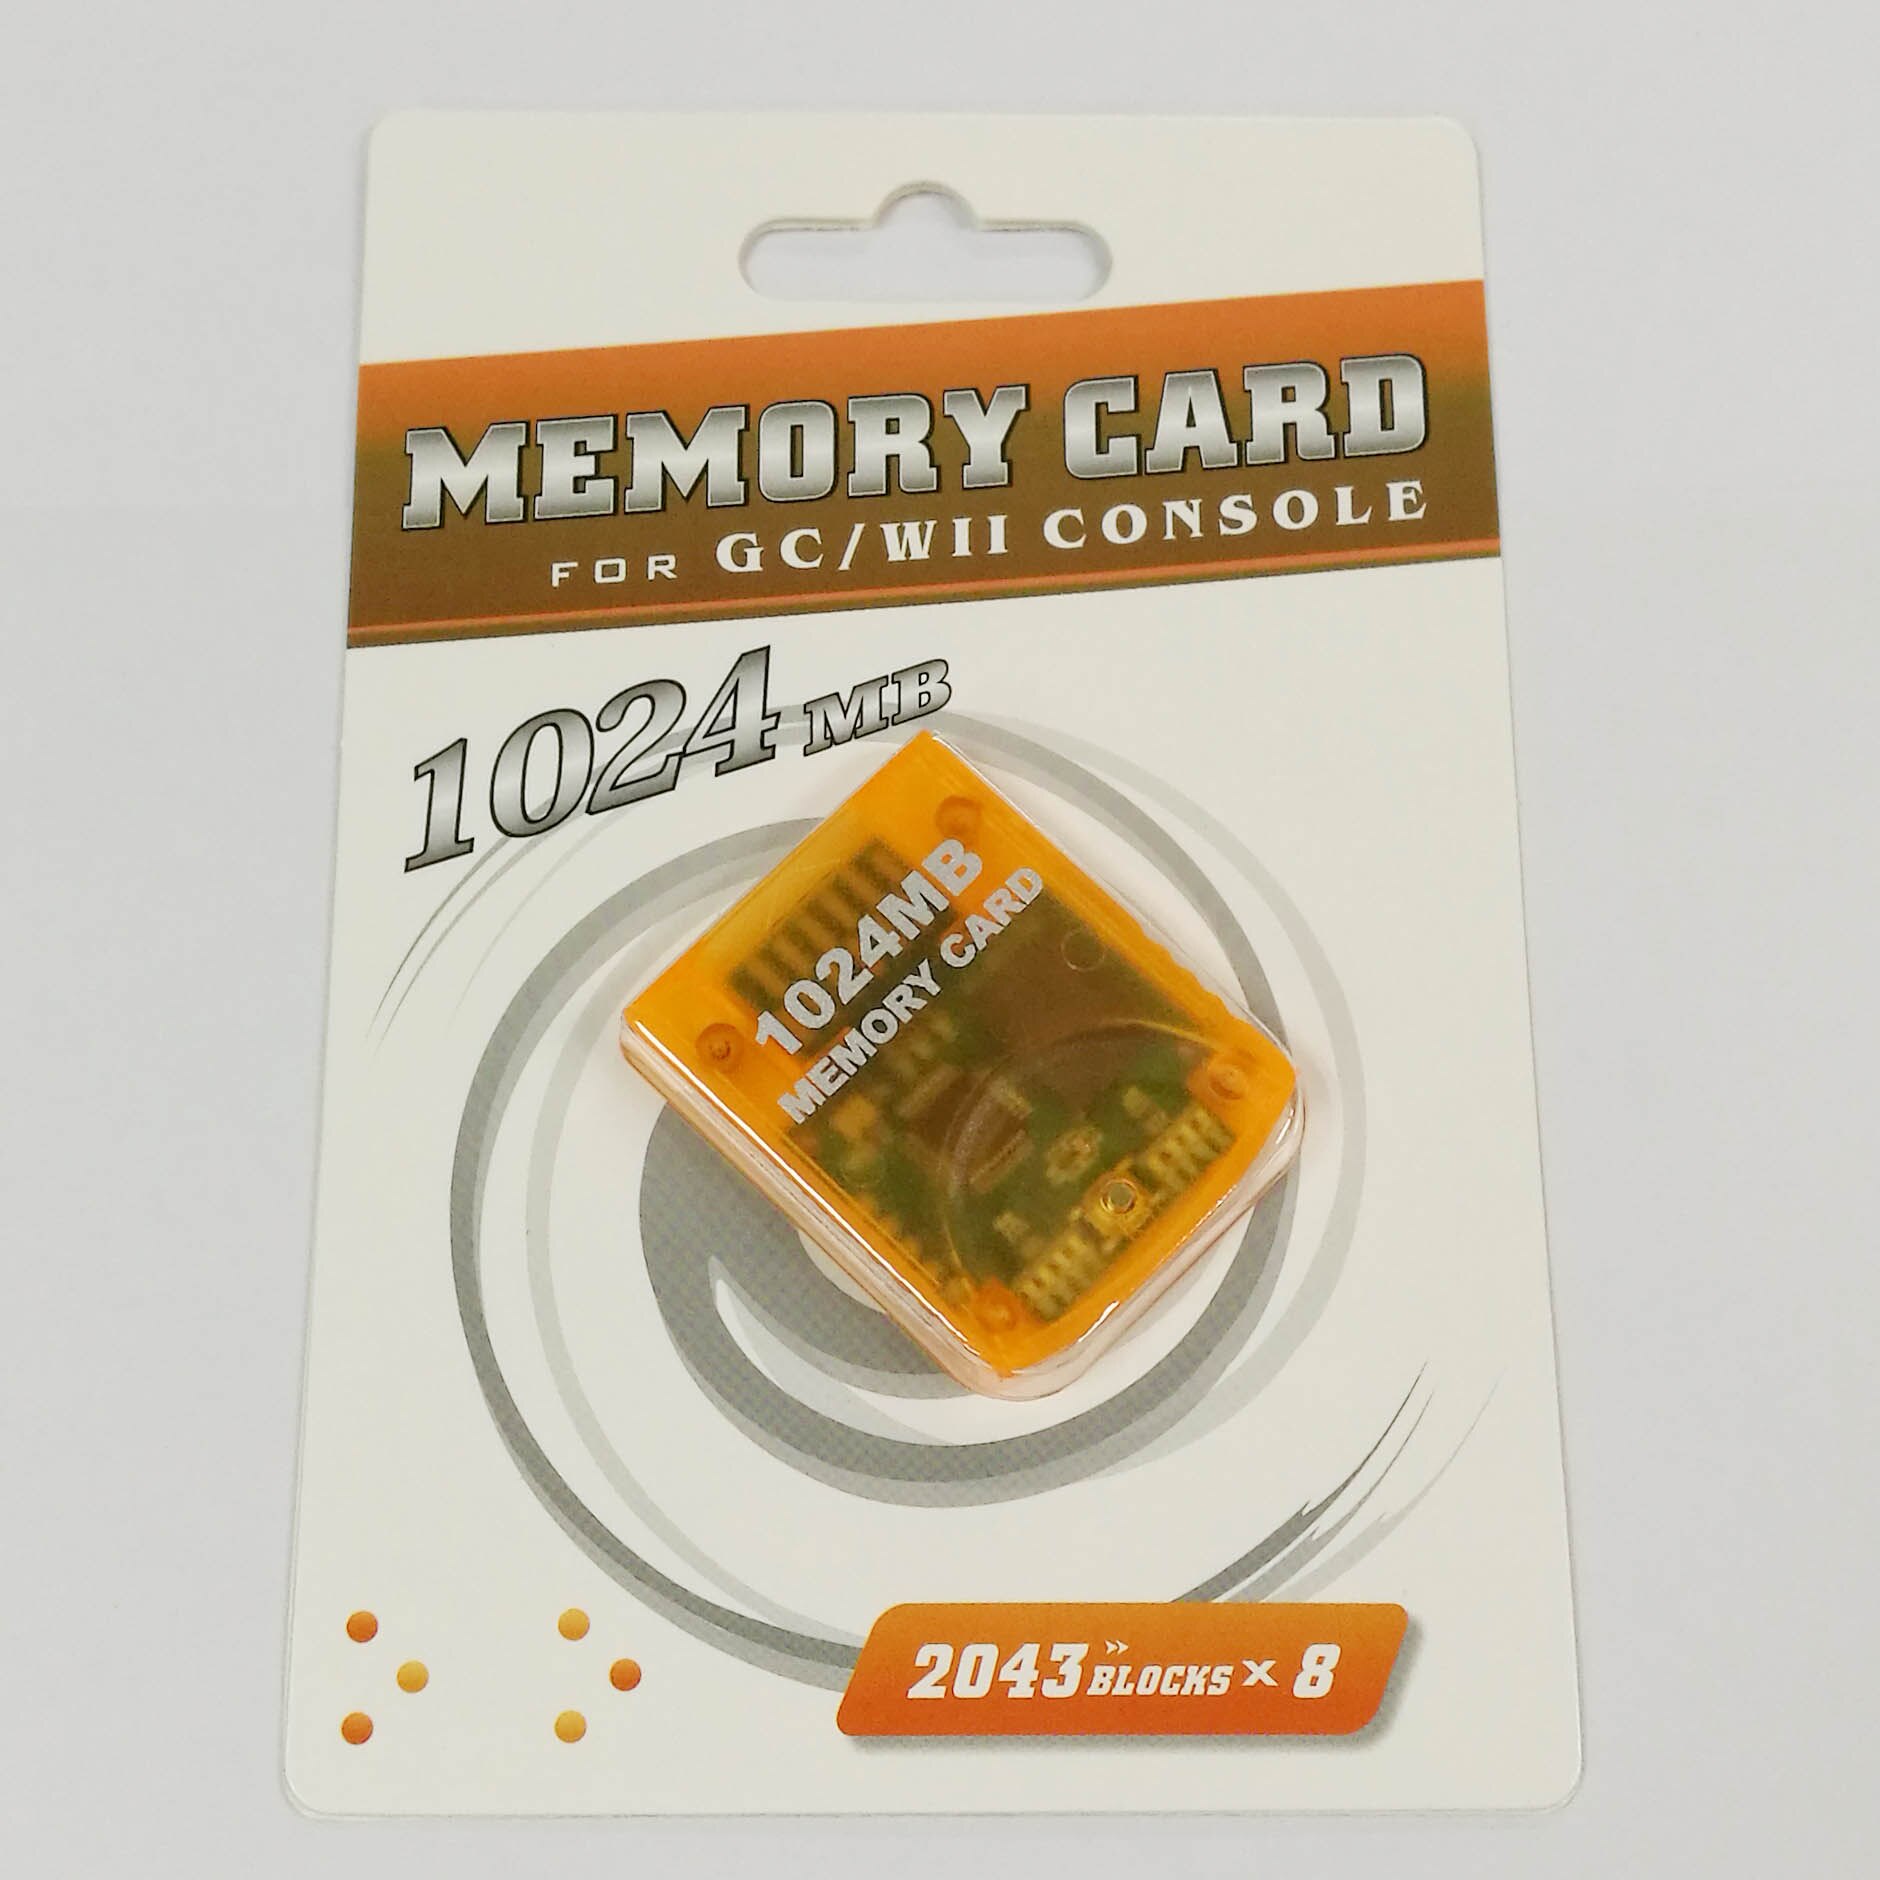 1024 M geheugenkaart Voor Wii Console Memory Storage Card Saver Voor GameCube GC Voor Wii